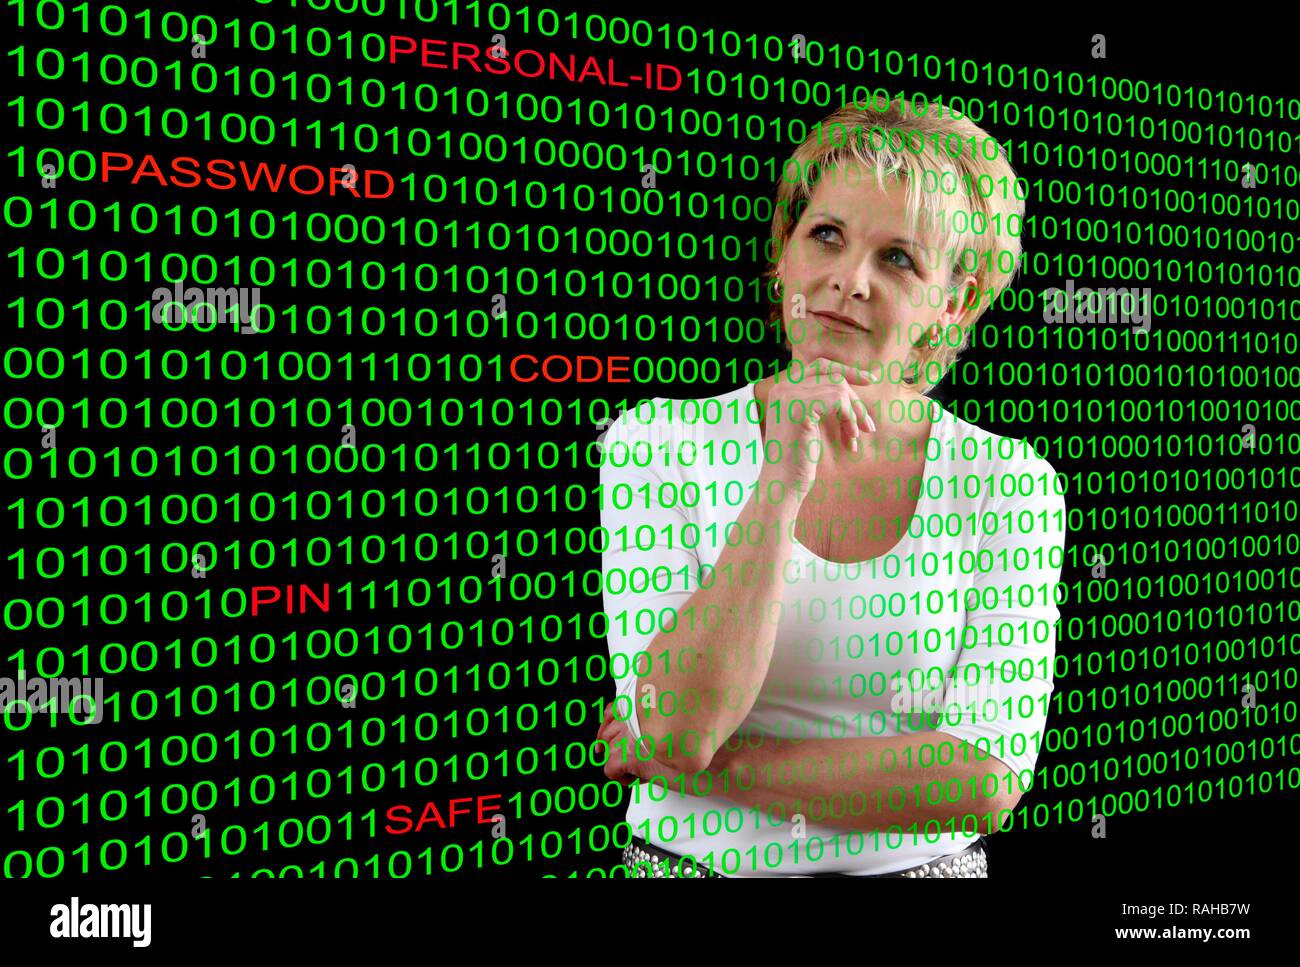 Femme avec un code de l'ordinateur et les mots mis en évidence par l'identification personnelle, mot de passe, code PIN, et coffre-fort, image symbolique pour ordinateur Banque D'Images